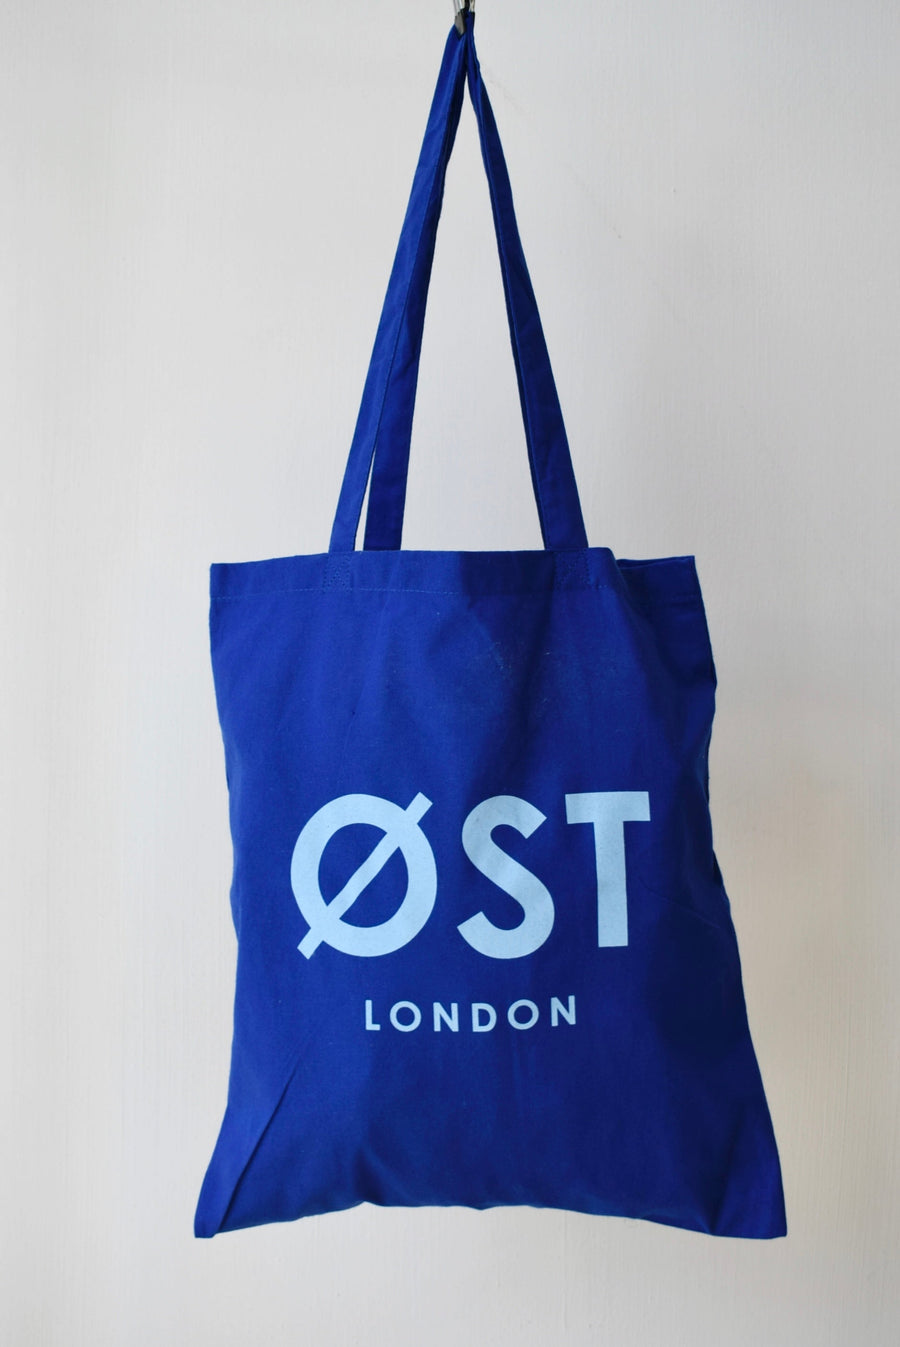 Øst London Tote Bag